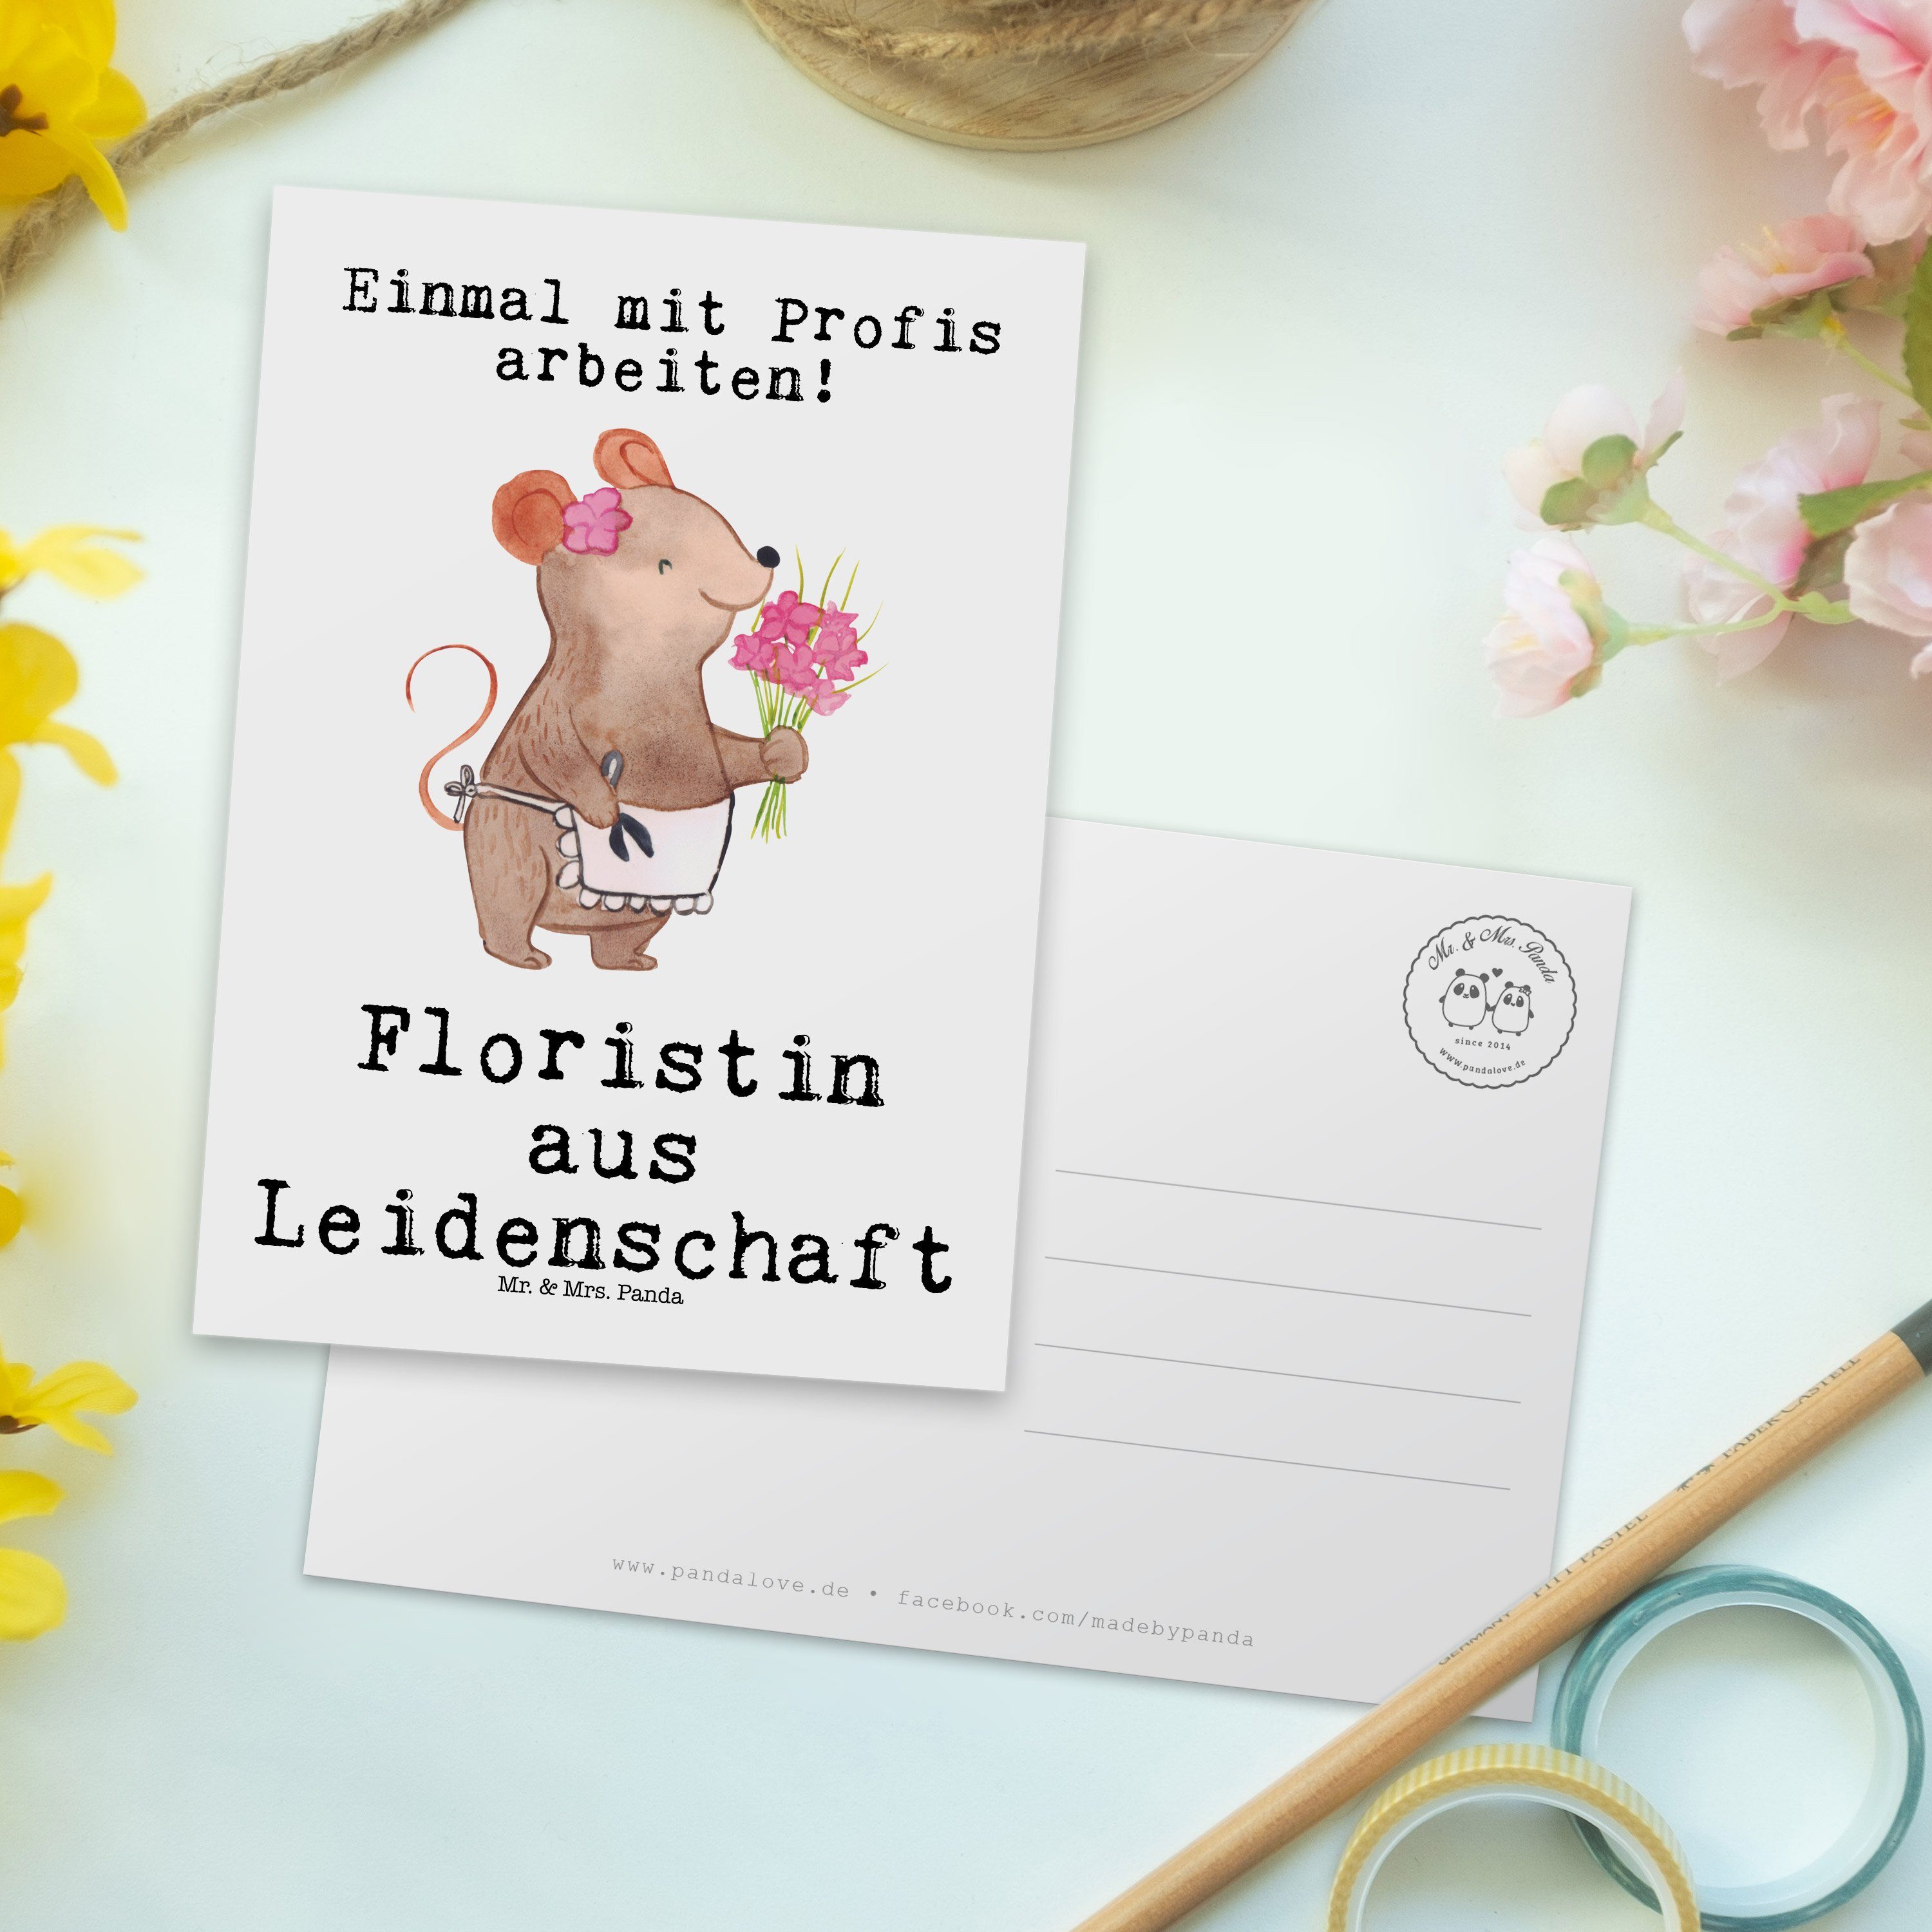 Mr. & Mrs. Firma, Blumenprofi, Dan Leidenschaft Weiß aus Postkarte - - Geschenk, Floristin Panda